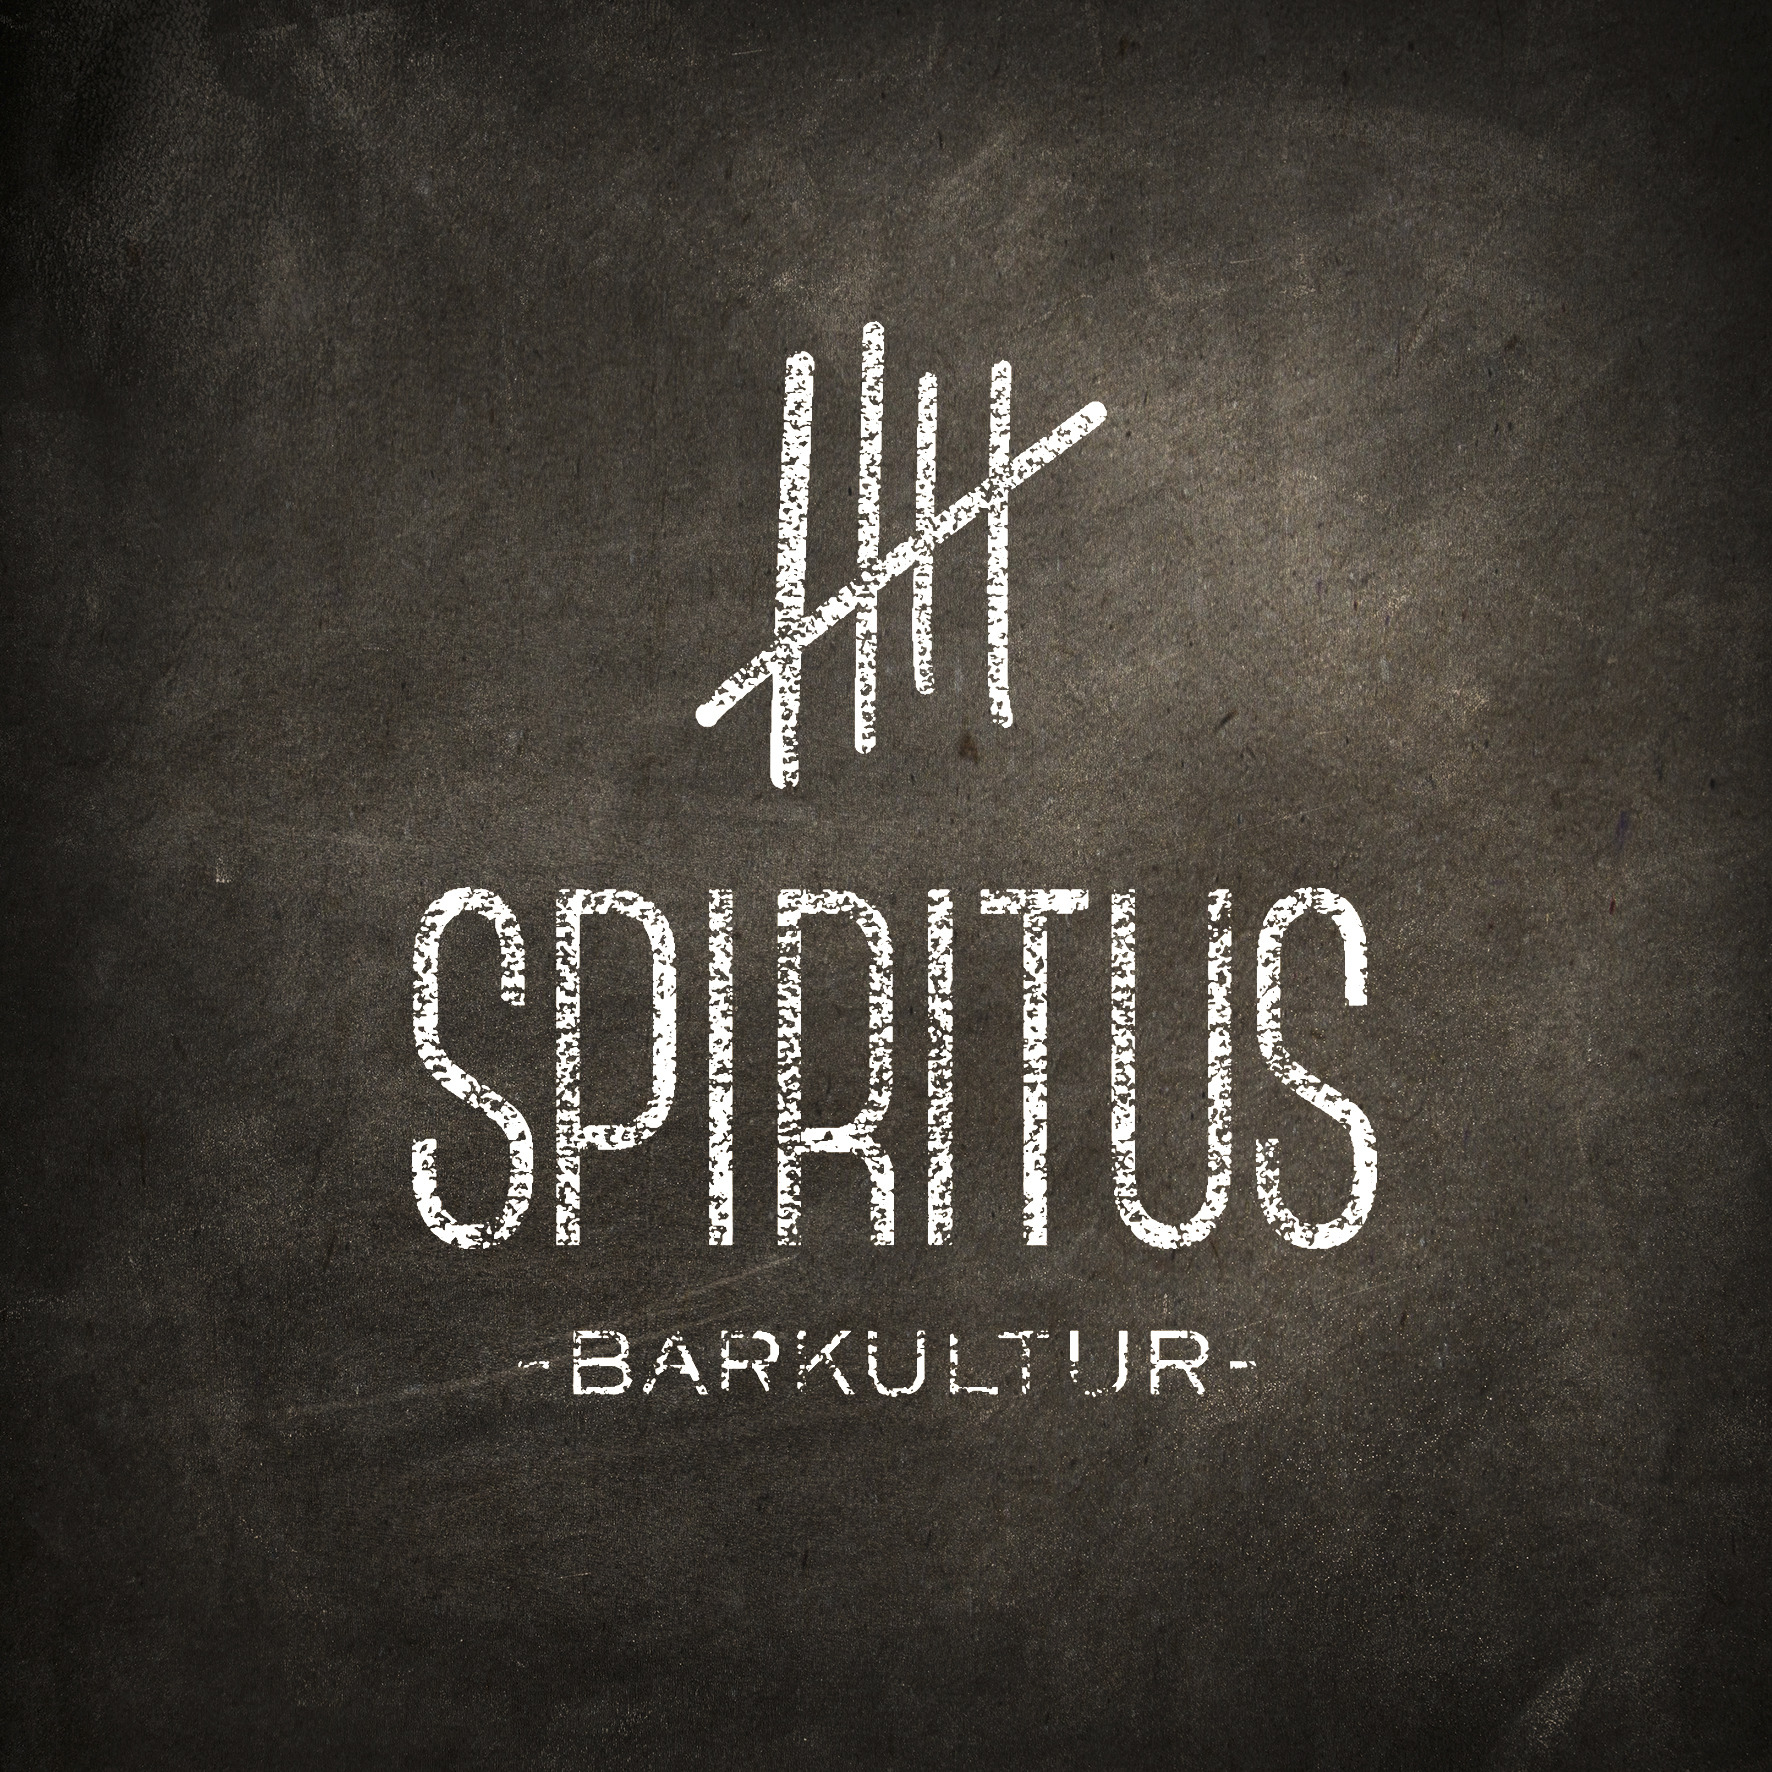 Logo Spiritus